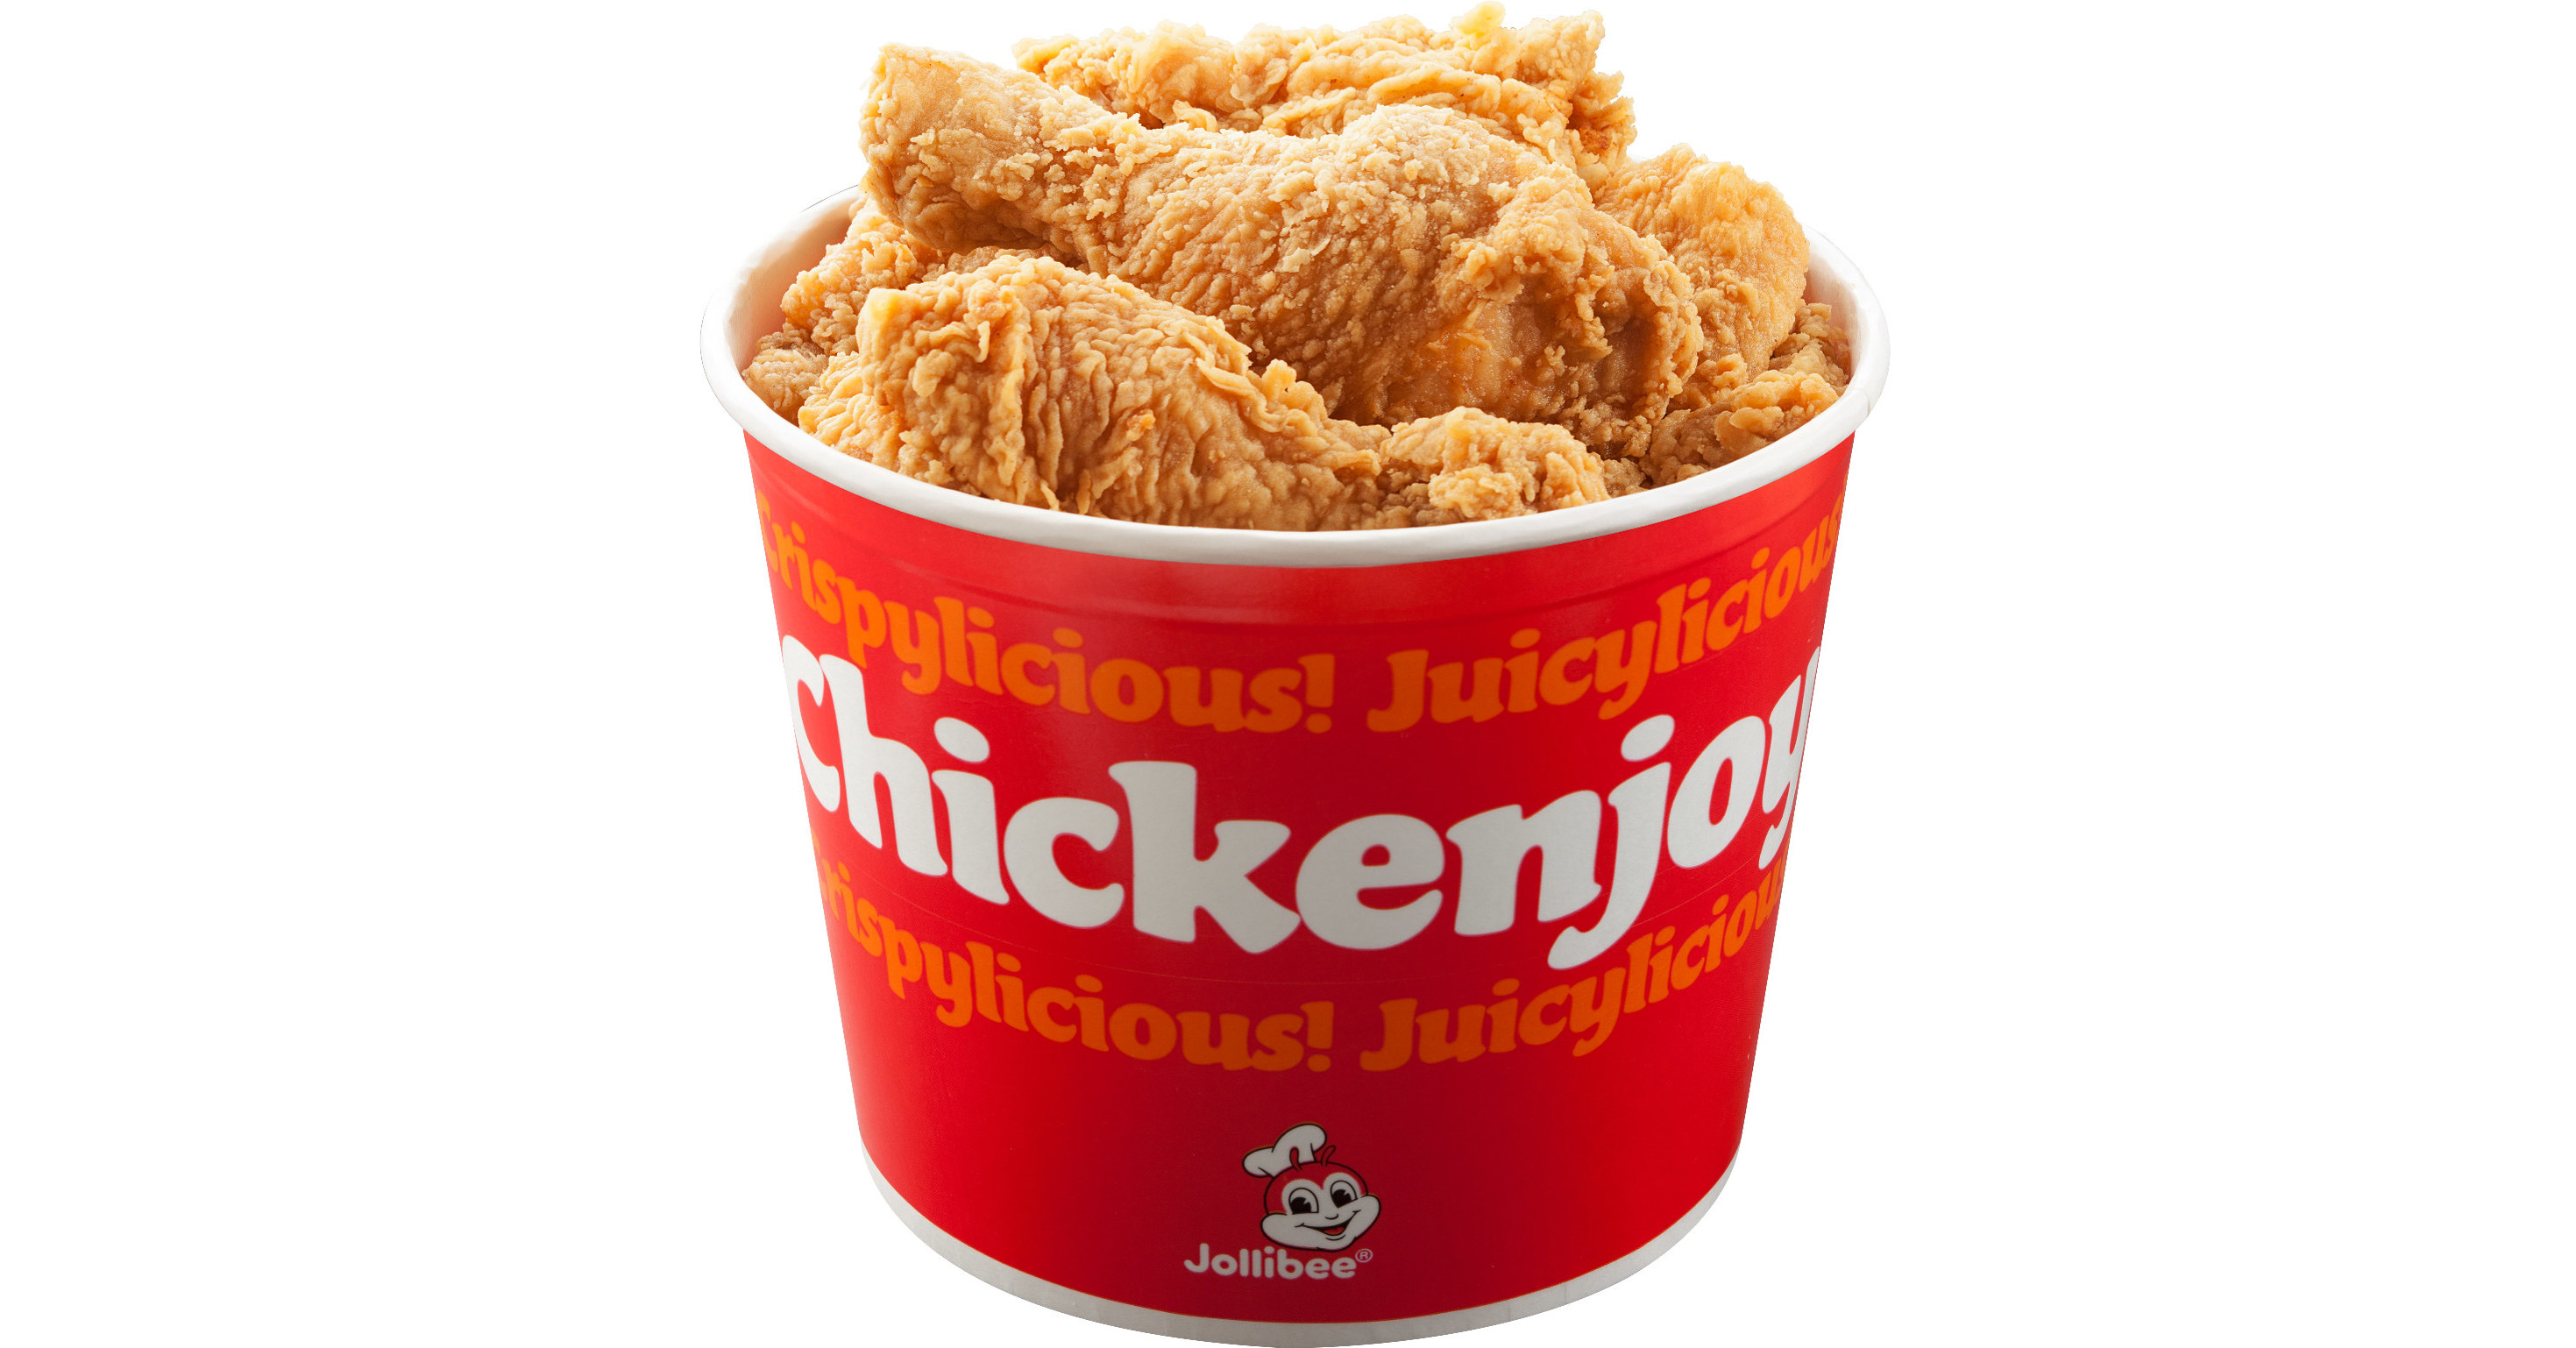 Jollibee abrirá una segunda ubicación en Queens, NY el 21 de julio de 2022, trayendo su icónico Chickenjoy Fried Chicken y otros deliciosos elementos del menú al vibrante vecindario de Jamaica.